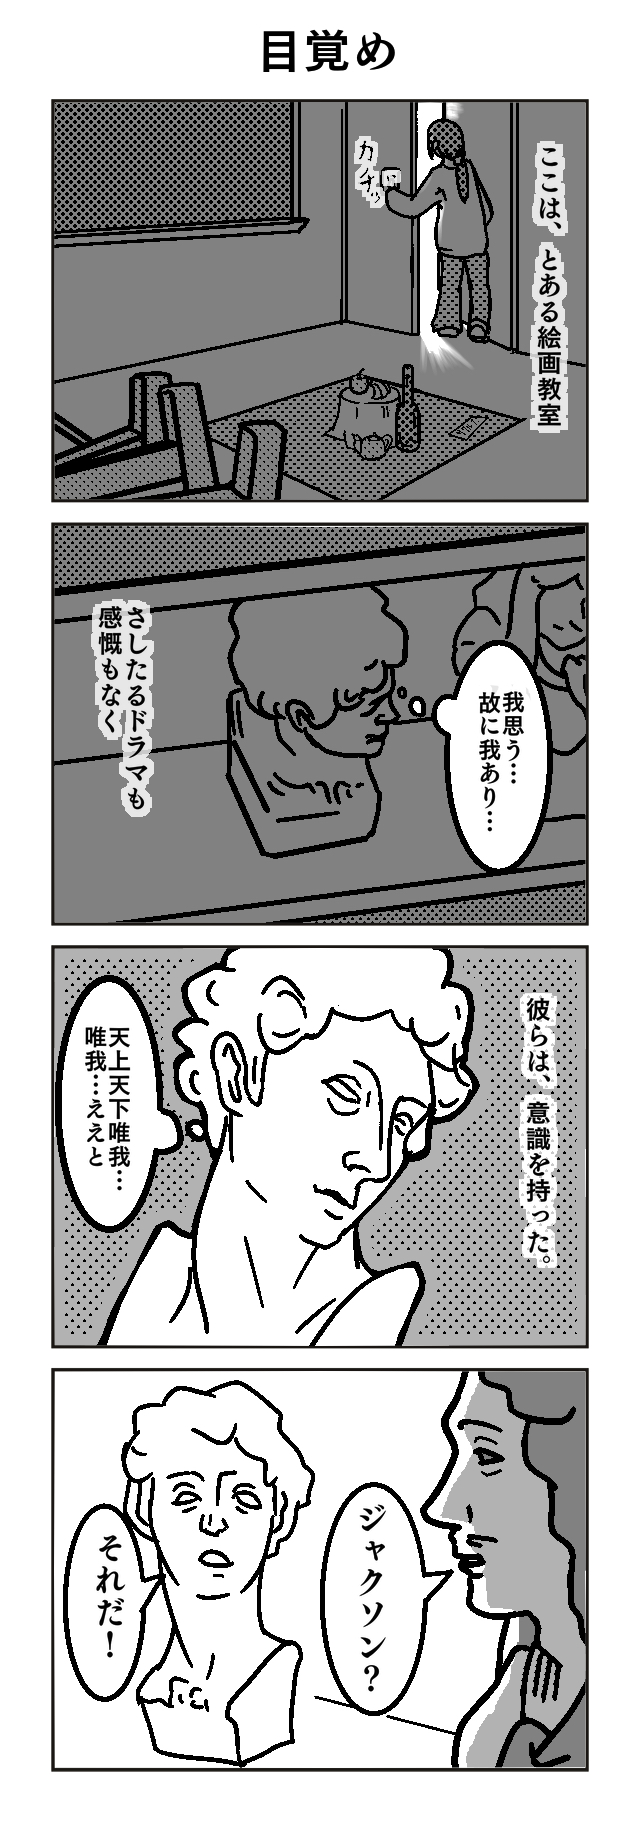 作品No.0011「石膏像かく語りき」アホトロル